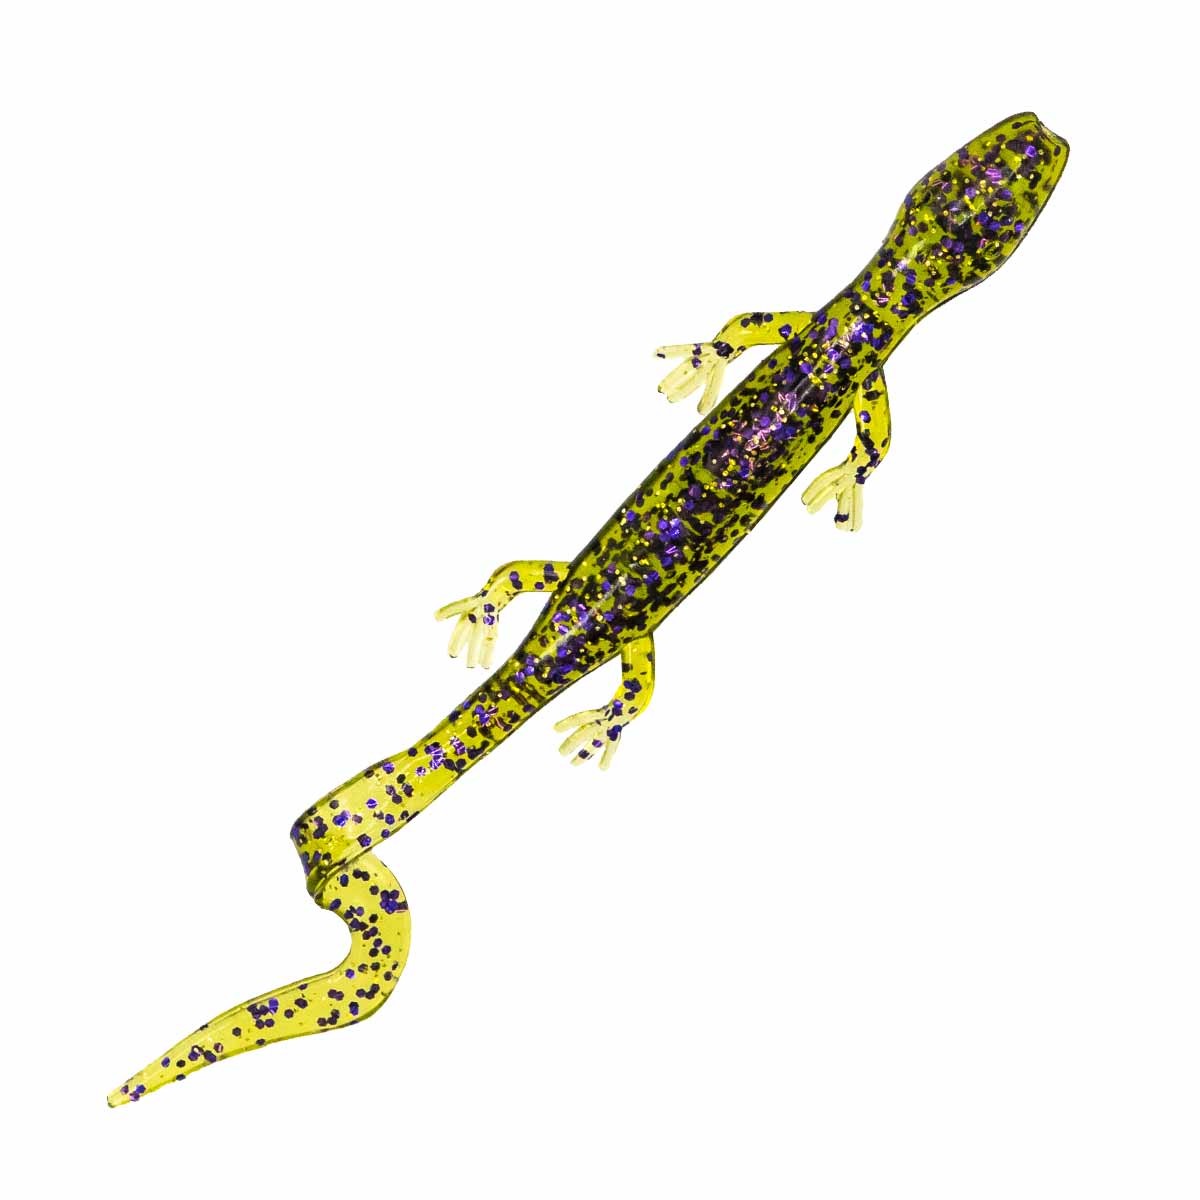 Gecko (8 Pack) – Rite Angler